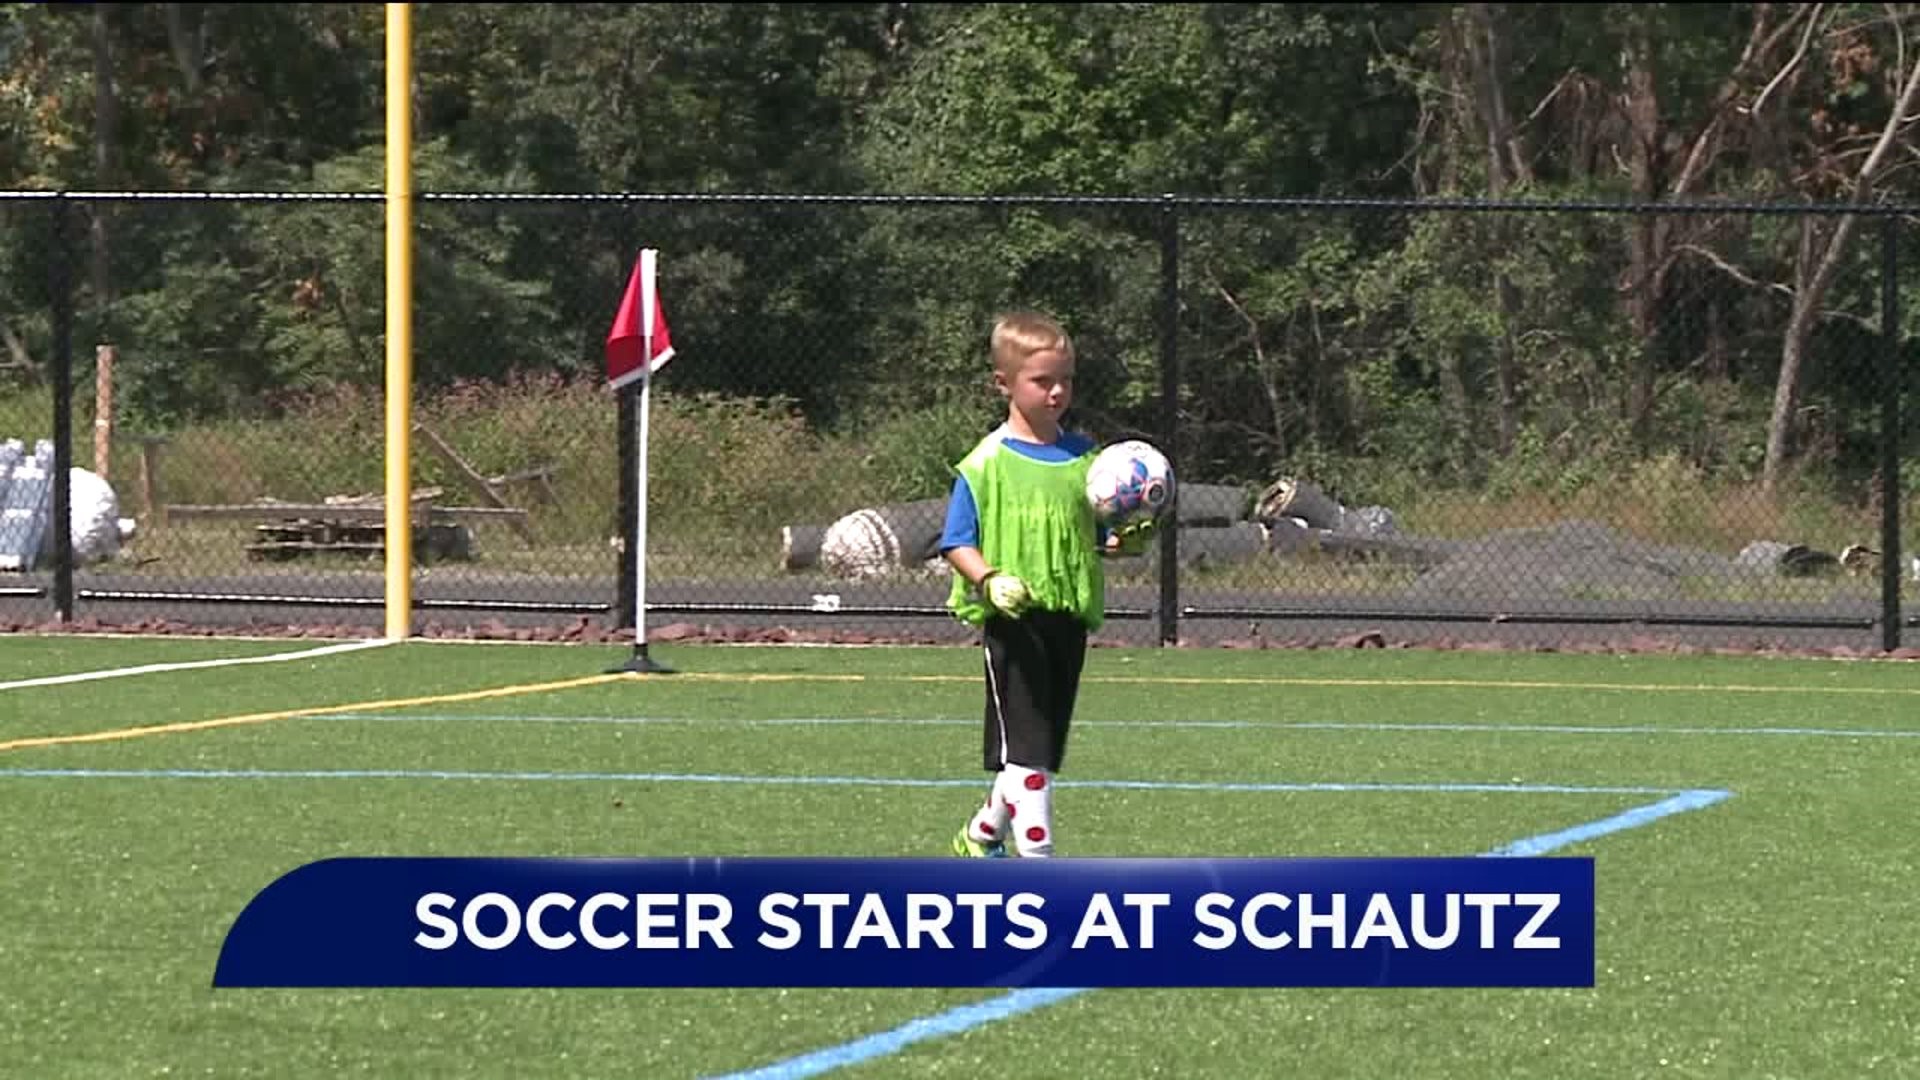 Soccer Starts at Schautz